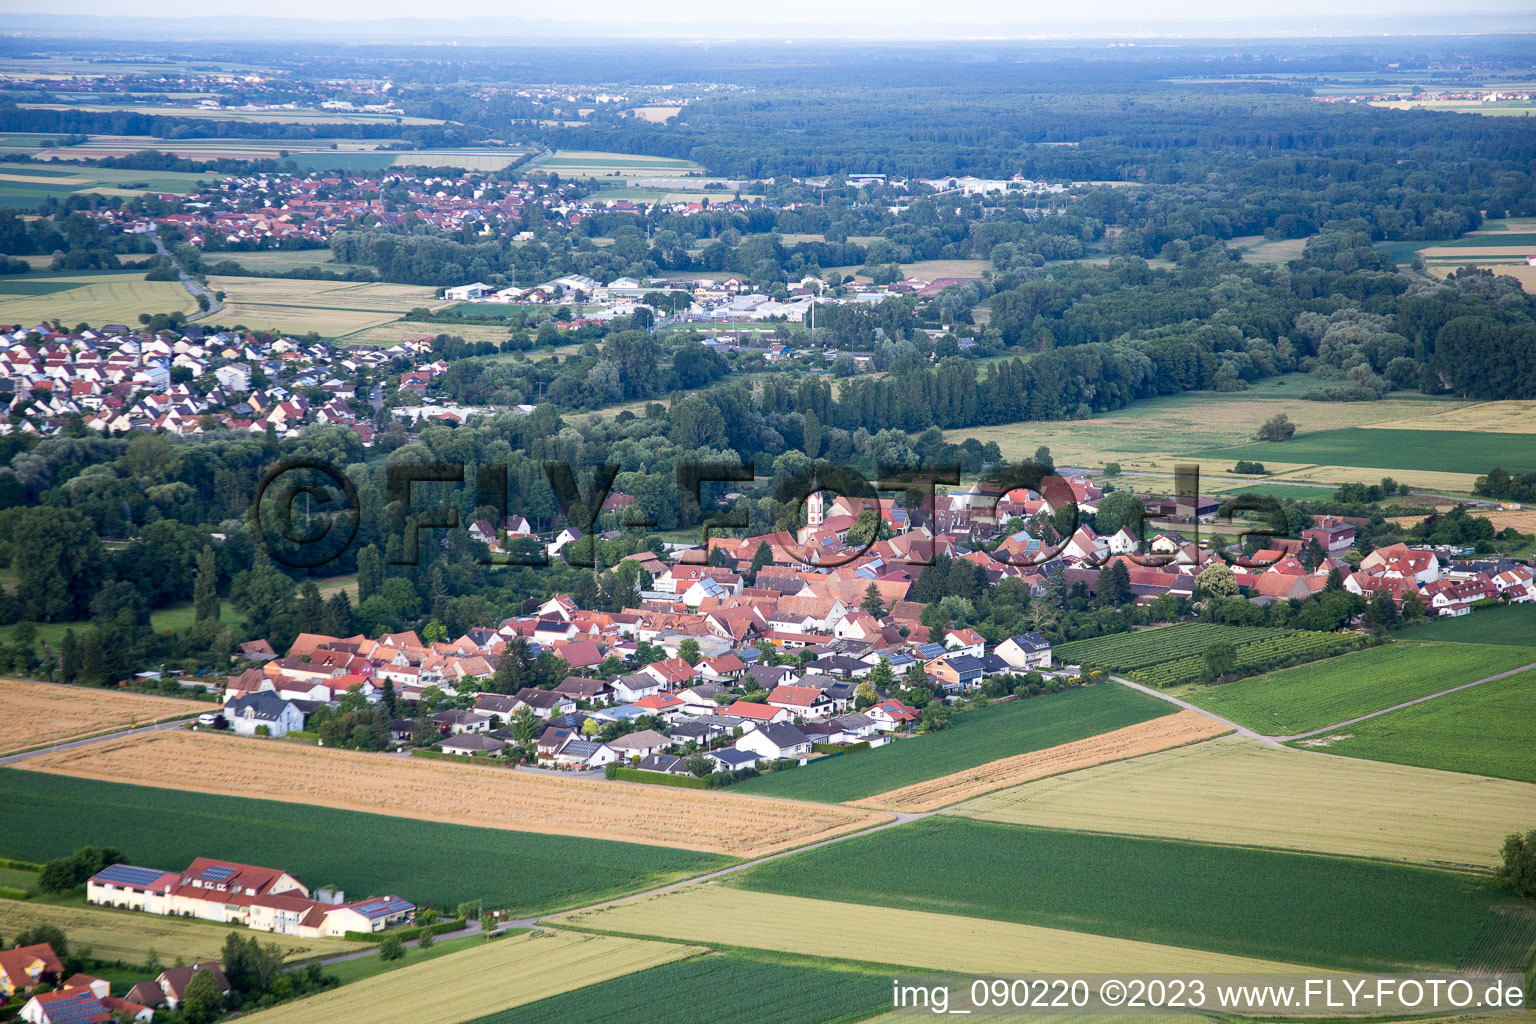 Bird's eye view of District Mühlhofen in Billigheim-Ingenheim in the state Rhineland-Palatinate, Germany